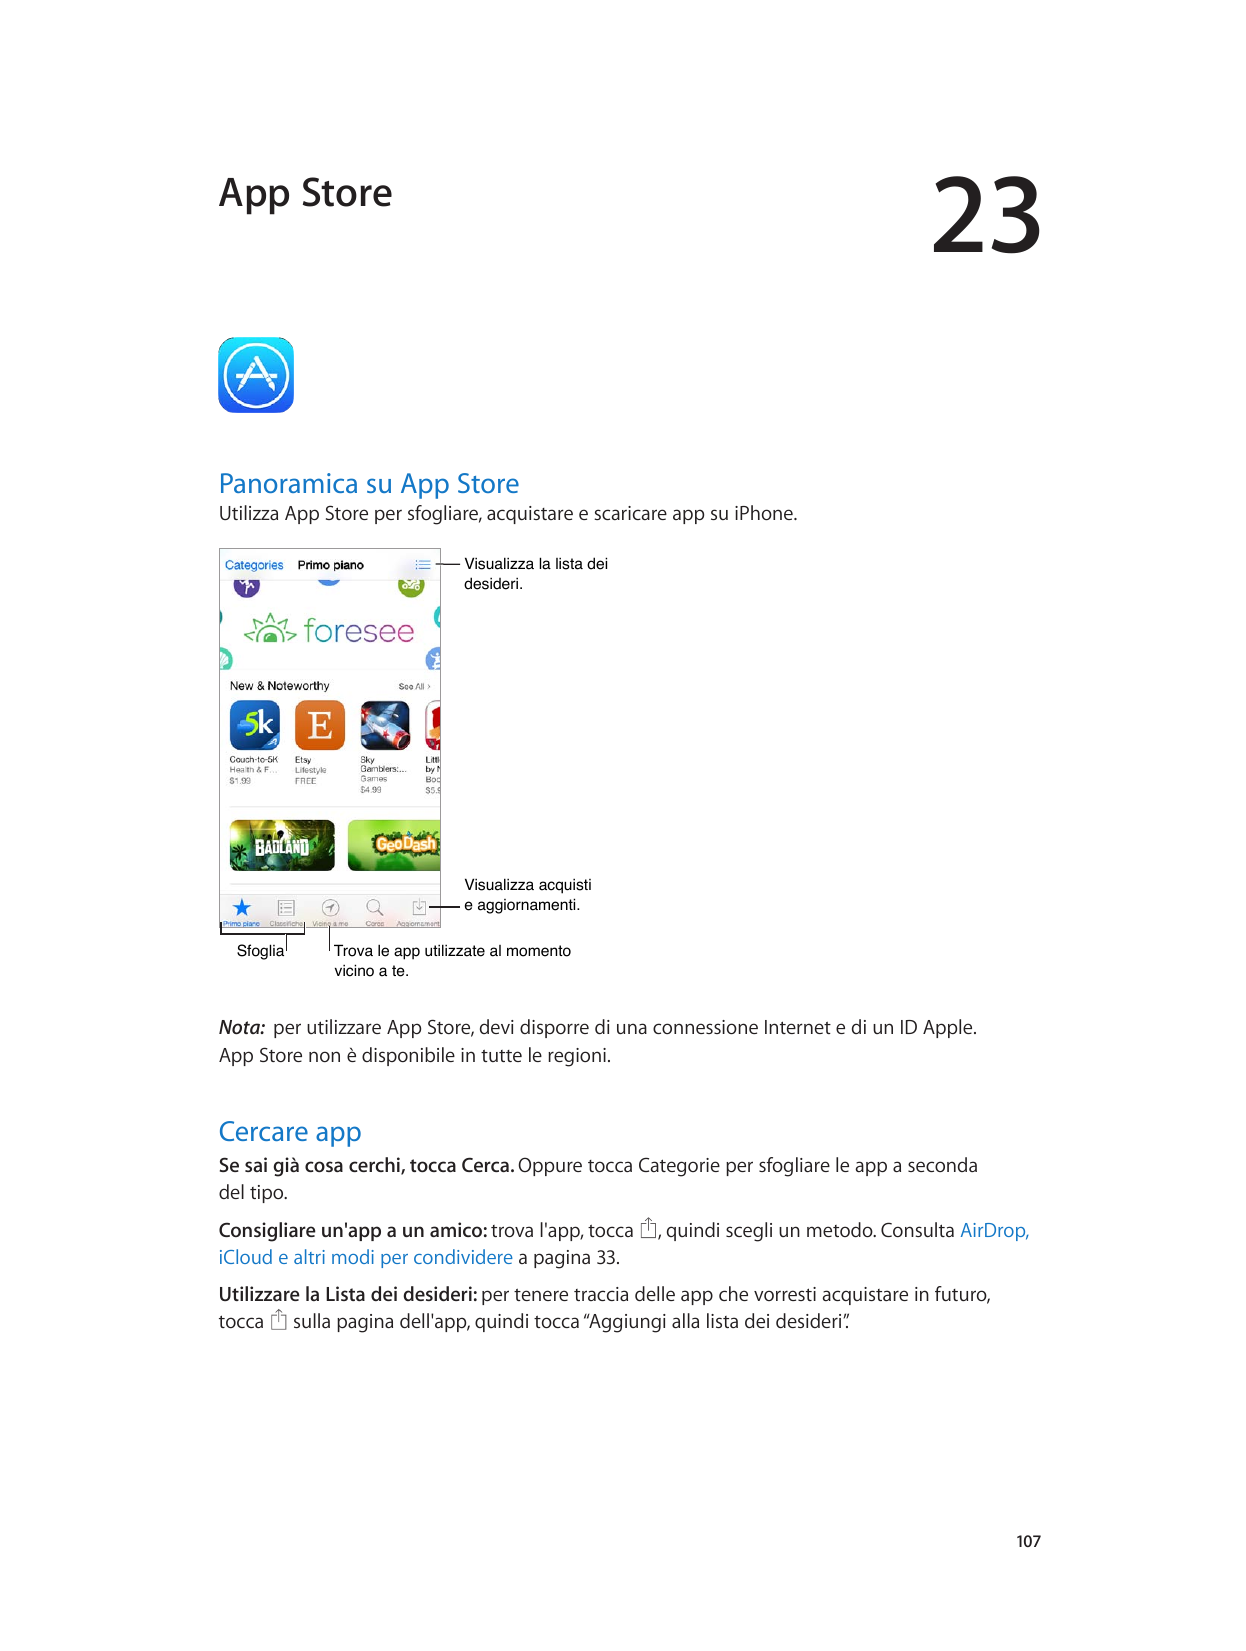 23App StorePanoramica su App StoreUtilizza App Store per sfogliare, acquistare e scaricare app su iPhone.Visualizza la lista dei